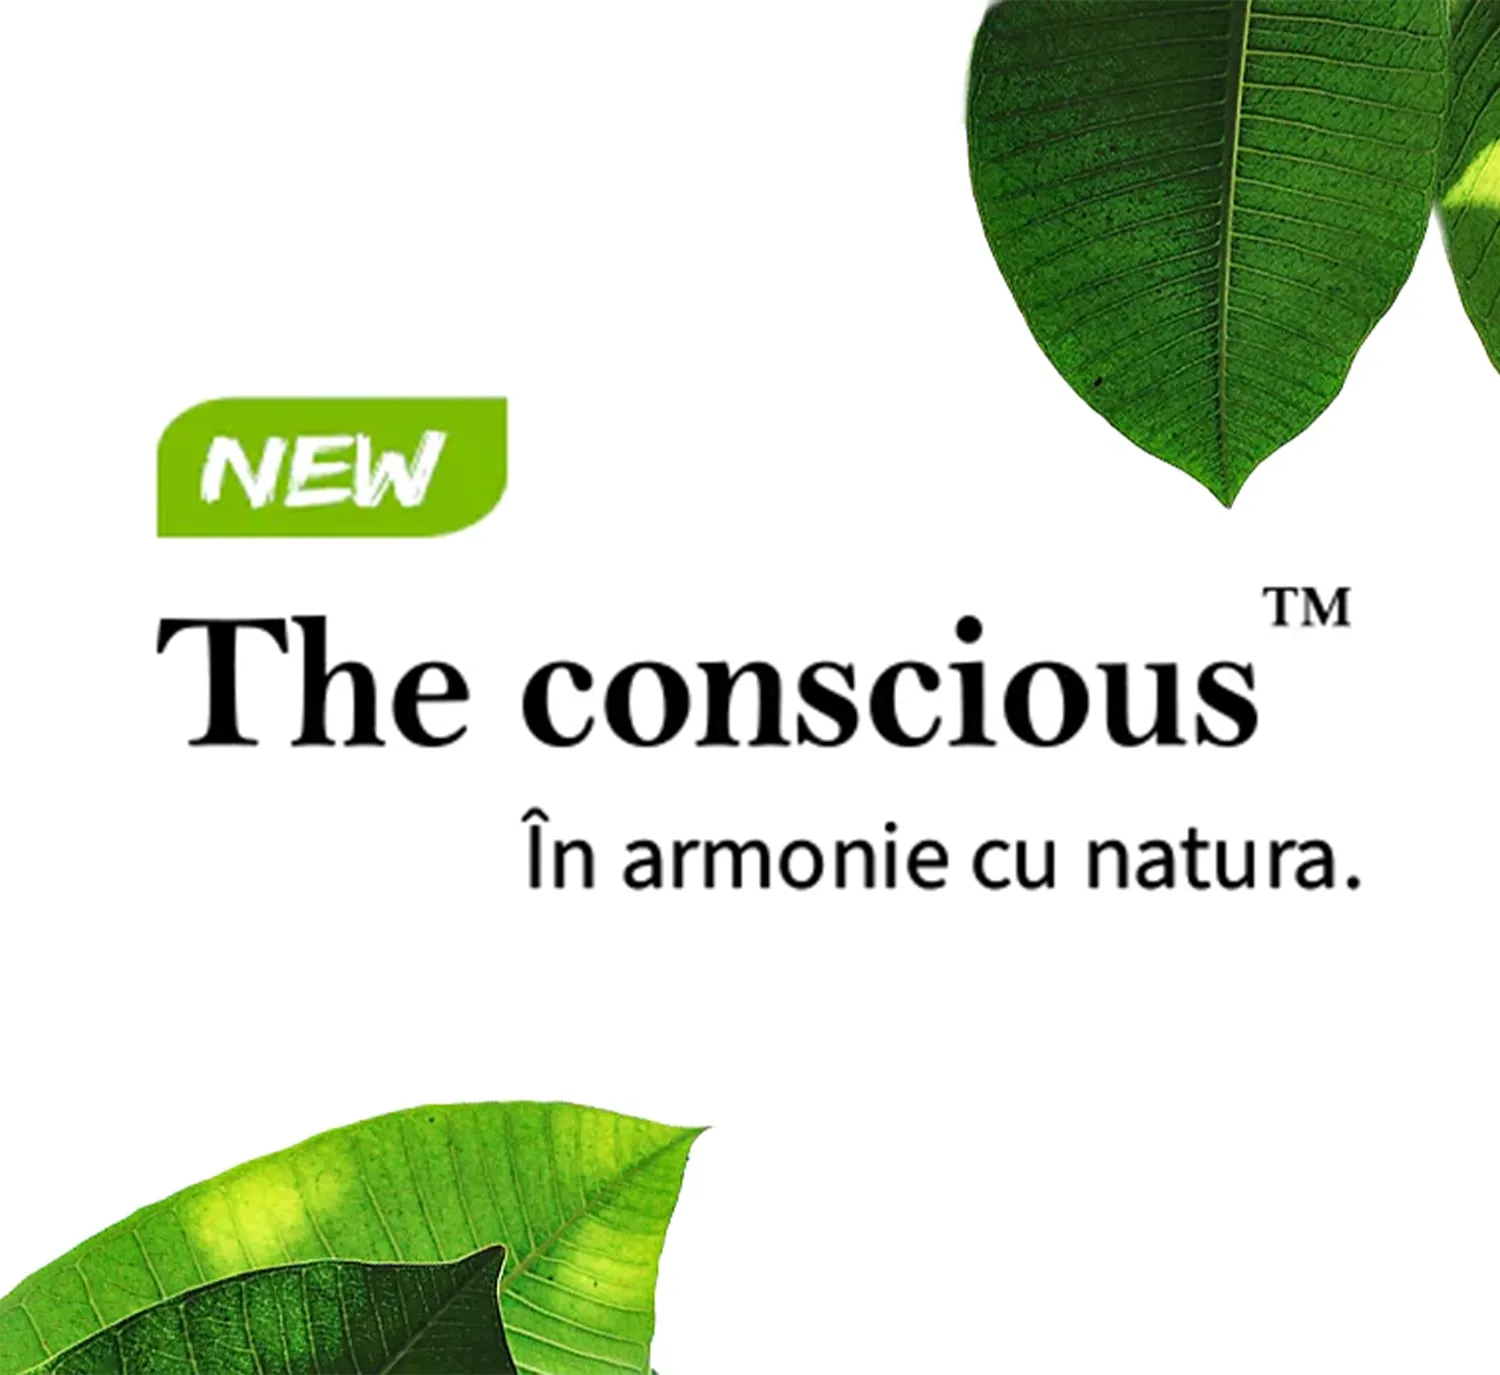 The conscious - in armonie cu natura